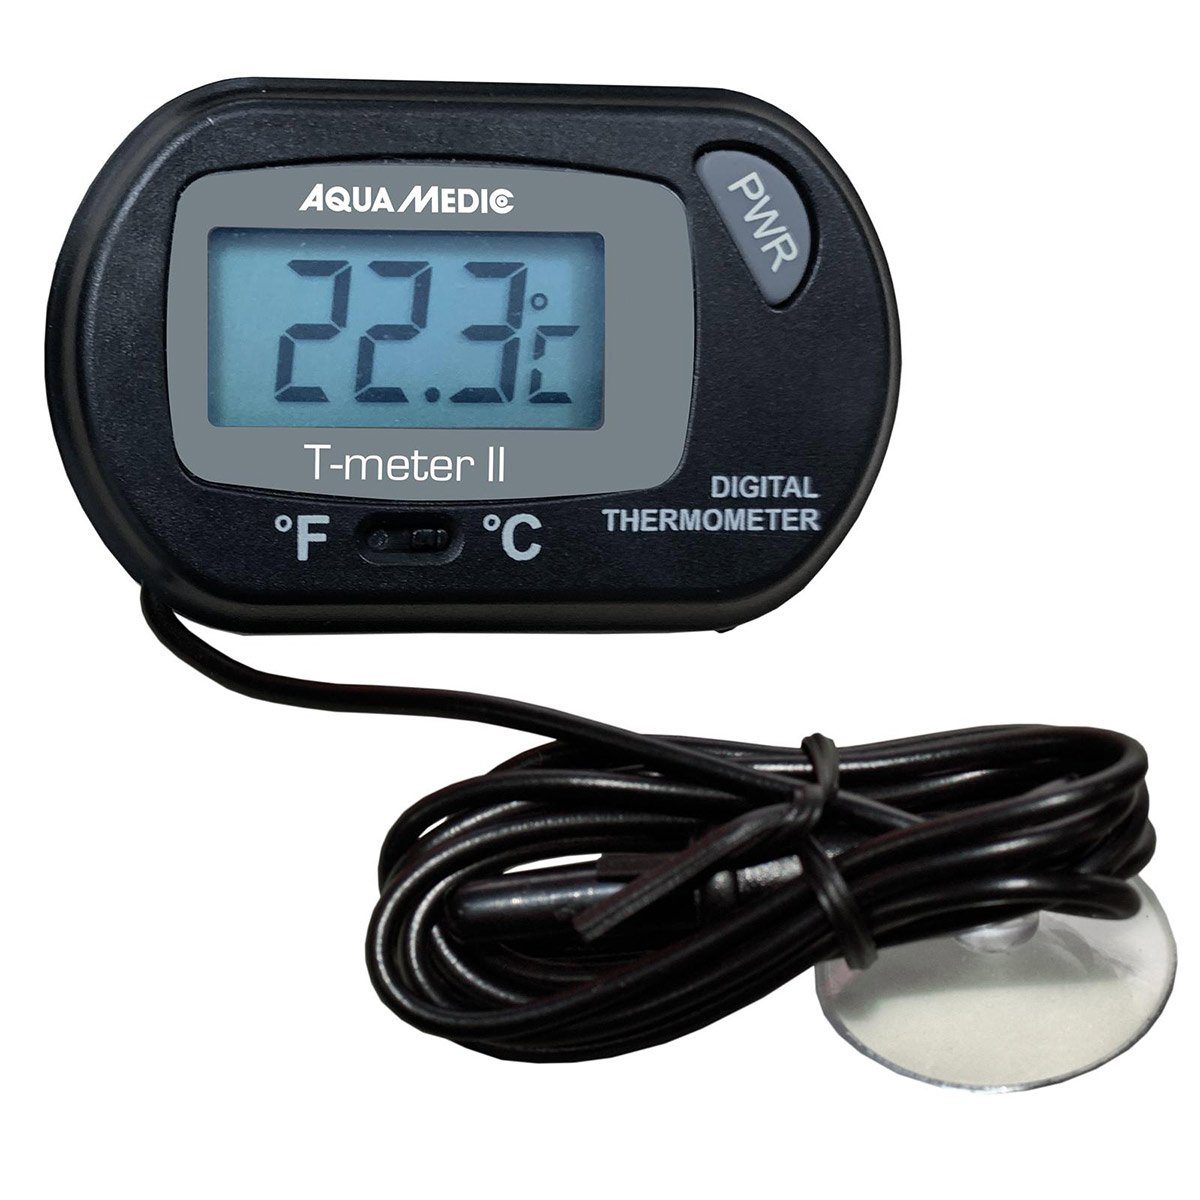 Aqua Medic Thermometer T-meter II von Aqua Medic